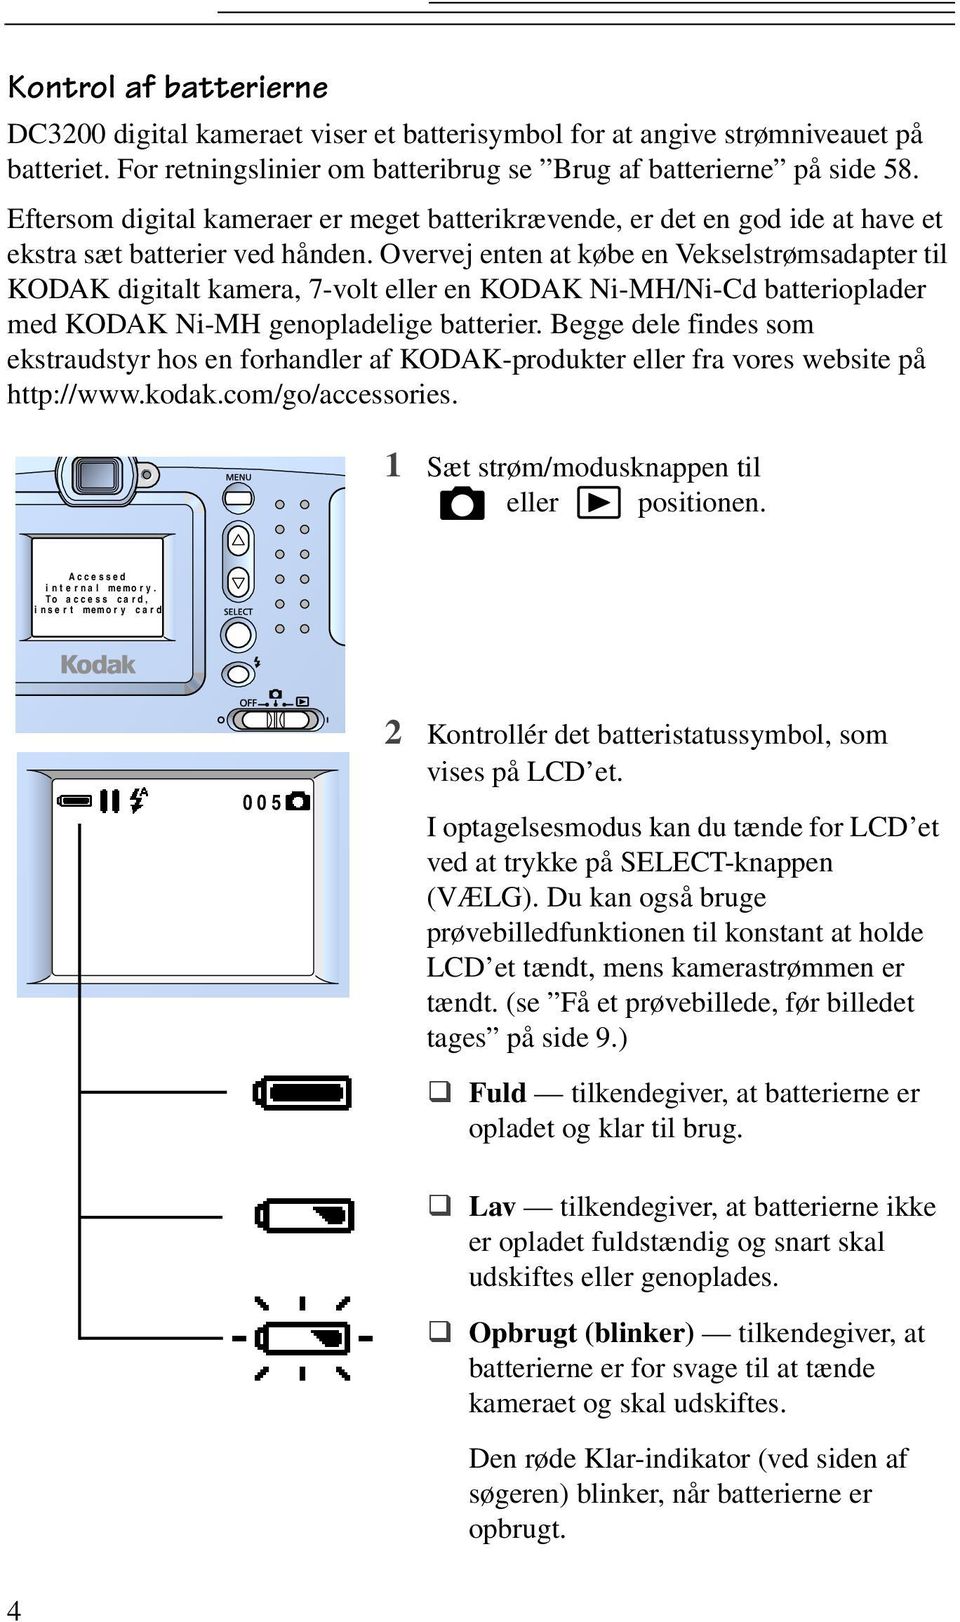 Overvej enten at købe en Vekselstrømsadapter til KODAK digitalt kamera, 7-volt eller en KODAK Ni-MH/Ni-Cd batterioplader med KODAK Ni-MH genopladelige batterier.